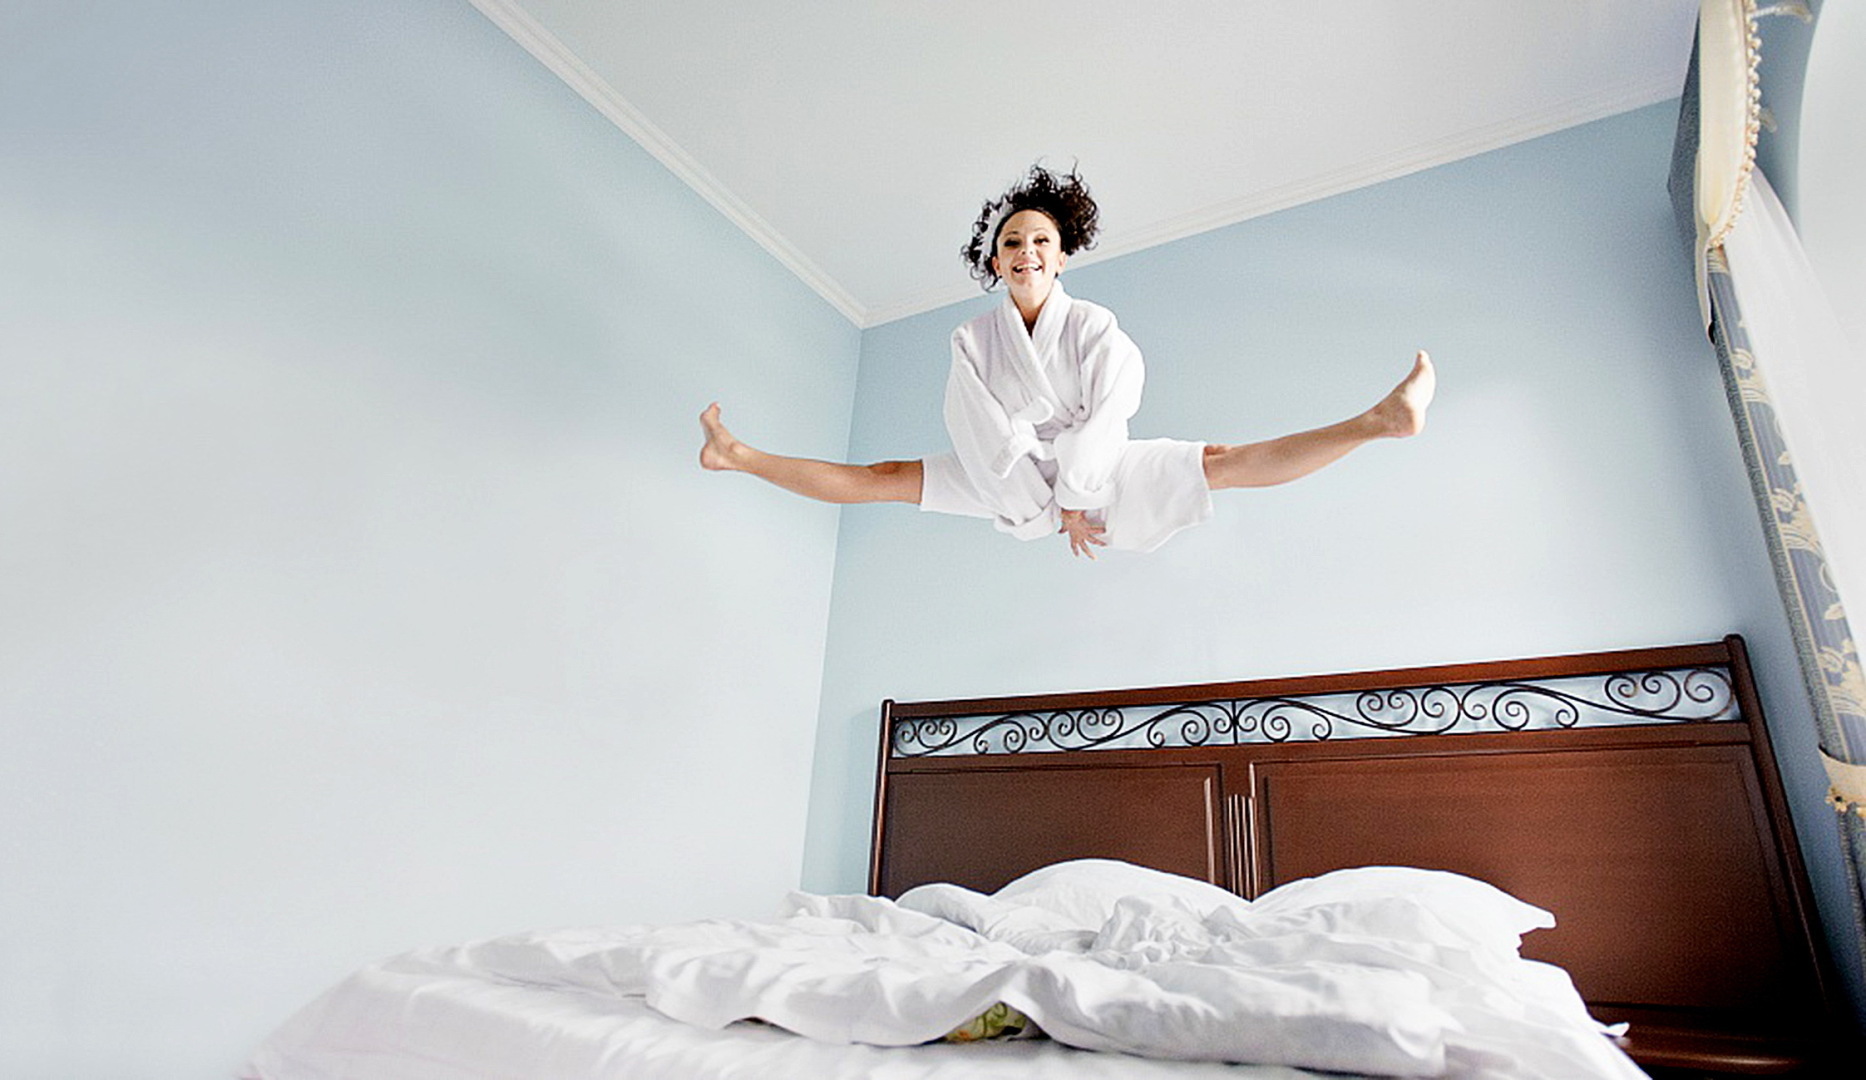 Утром встаю танцую девочка лучше. Прыжки на кровати. Человек прыгает на кровати. Девушка потягивается. Вставать с постели.